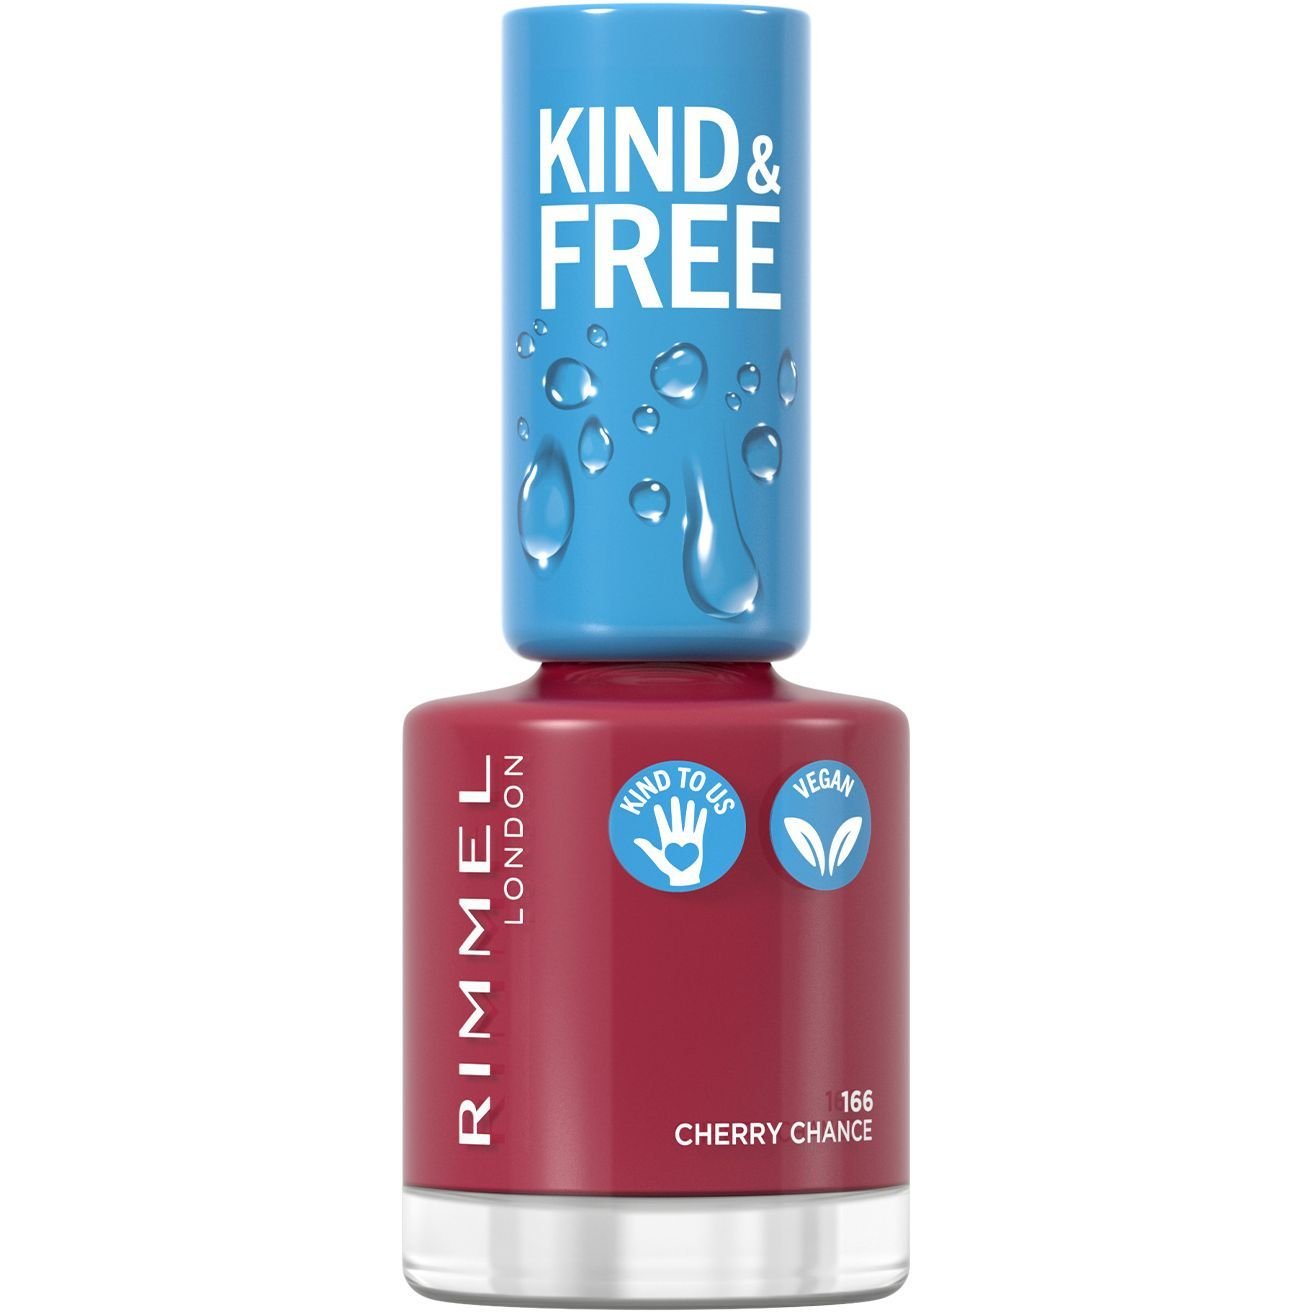 Лак для нігтів Rimmel Kind & Free, відтінок 166 (Cherry Chance), 8 мл - фото 1